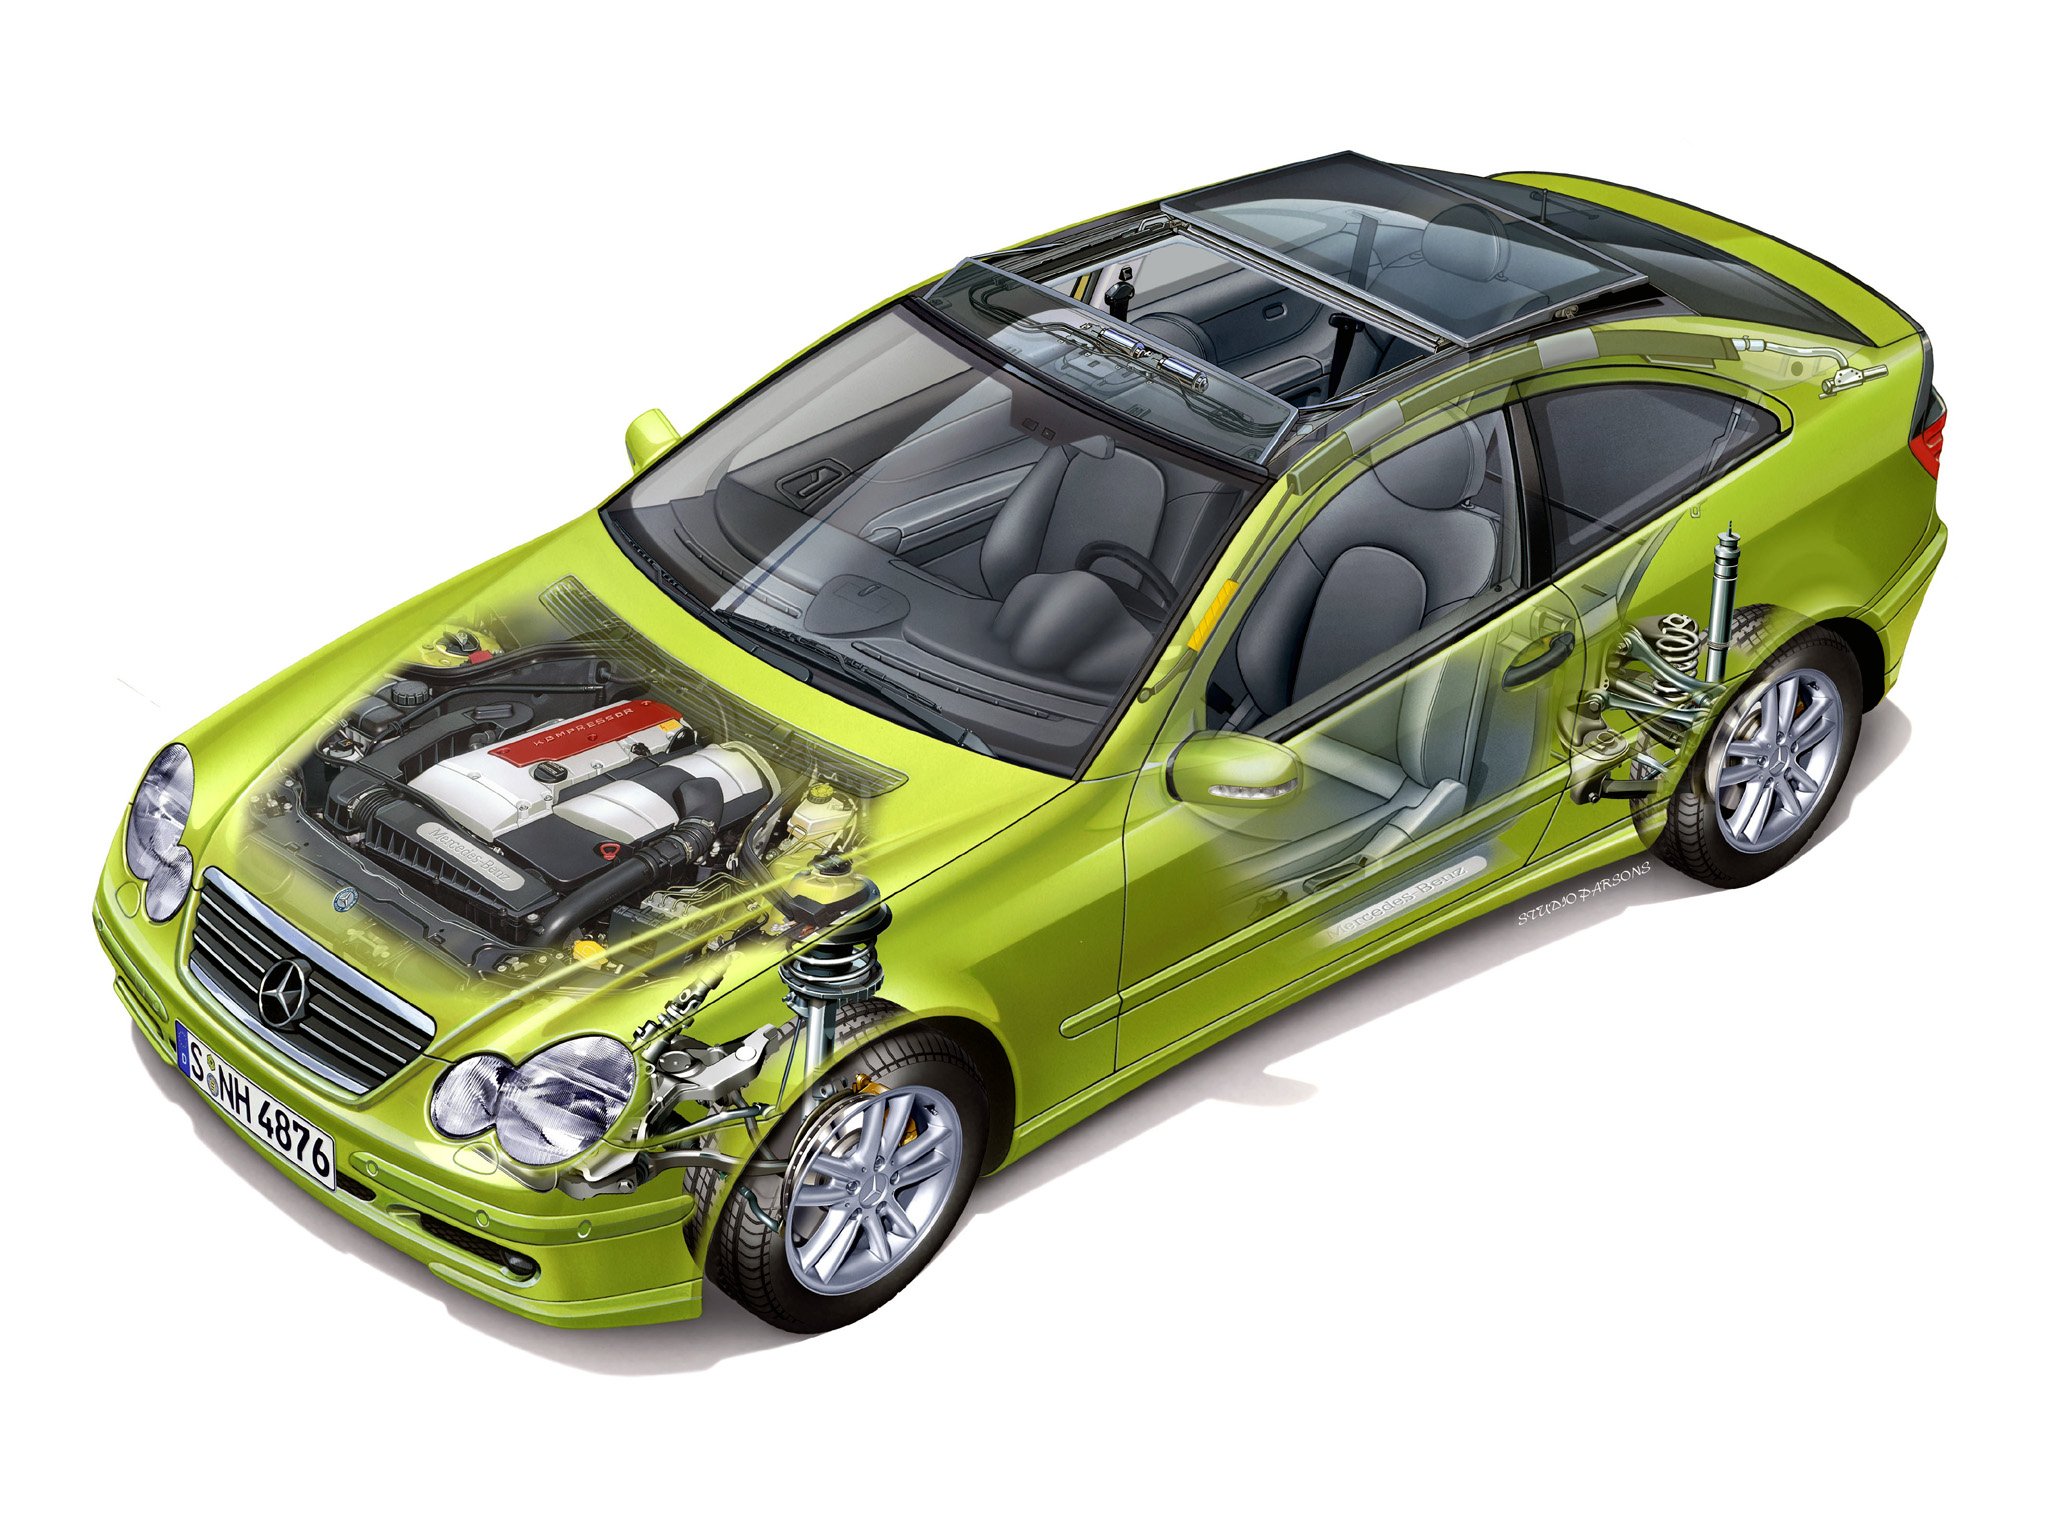 mercedes, Benz, C 200, Kompressor, Sport, Coupe, Cars, Technical, Cutaway, 2010 Wallpaper